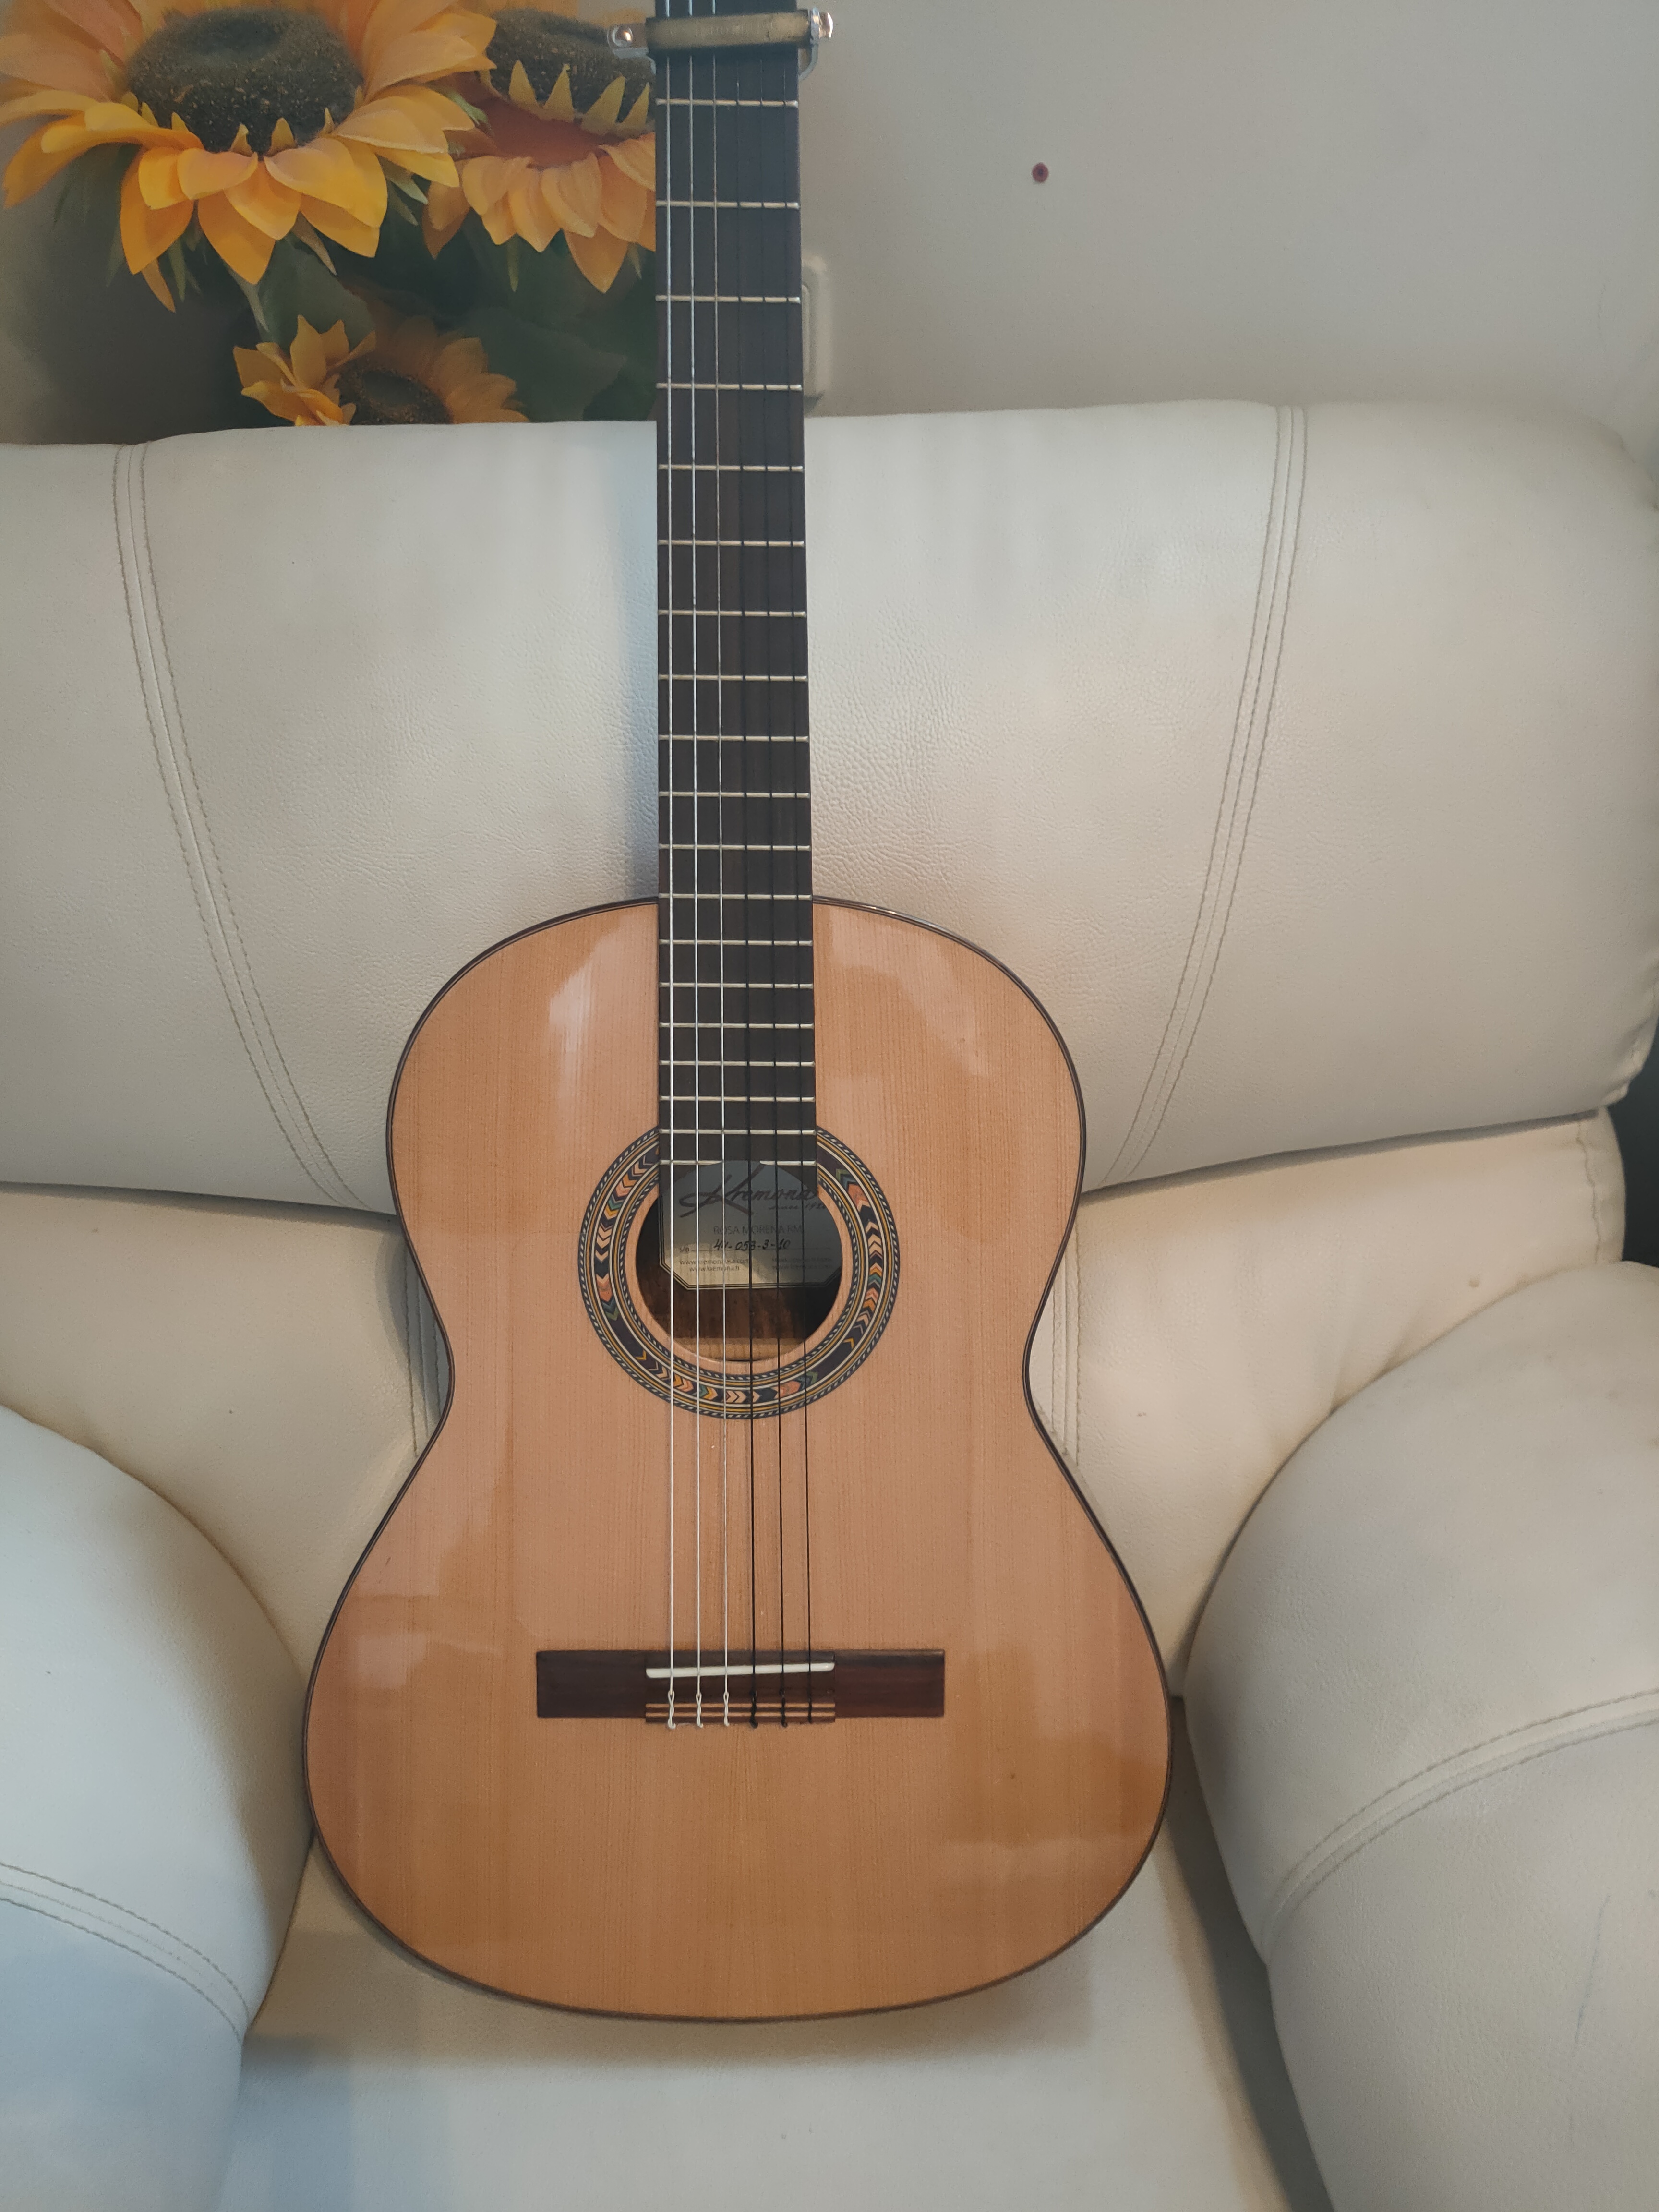 תמונה 2 ,גיטארה פלמנקו למכירה בחיפה כלי נגינה  גיטרה קלאסית